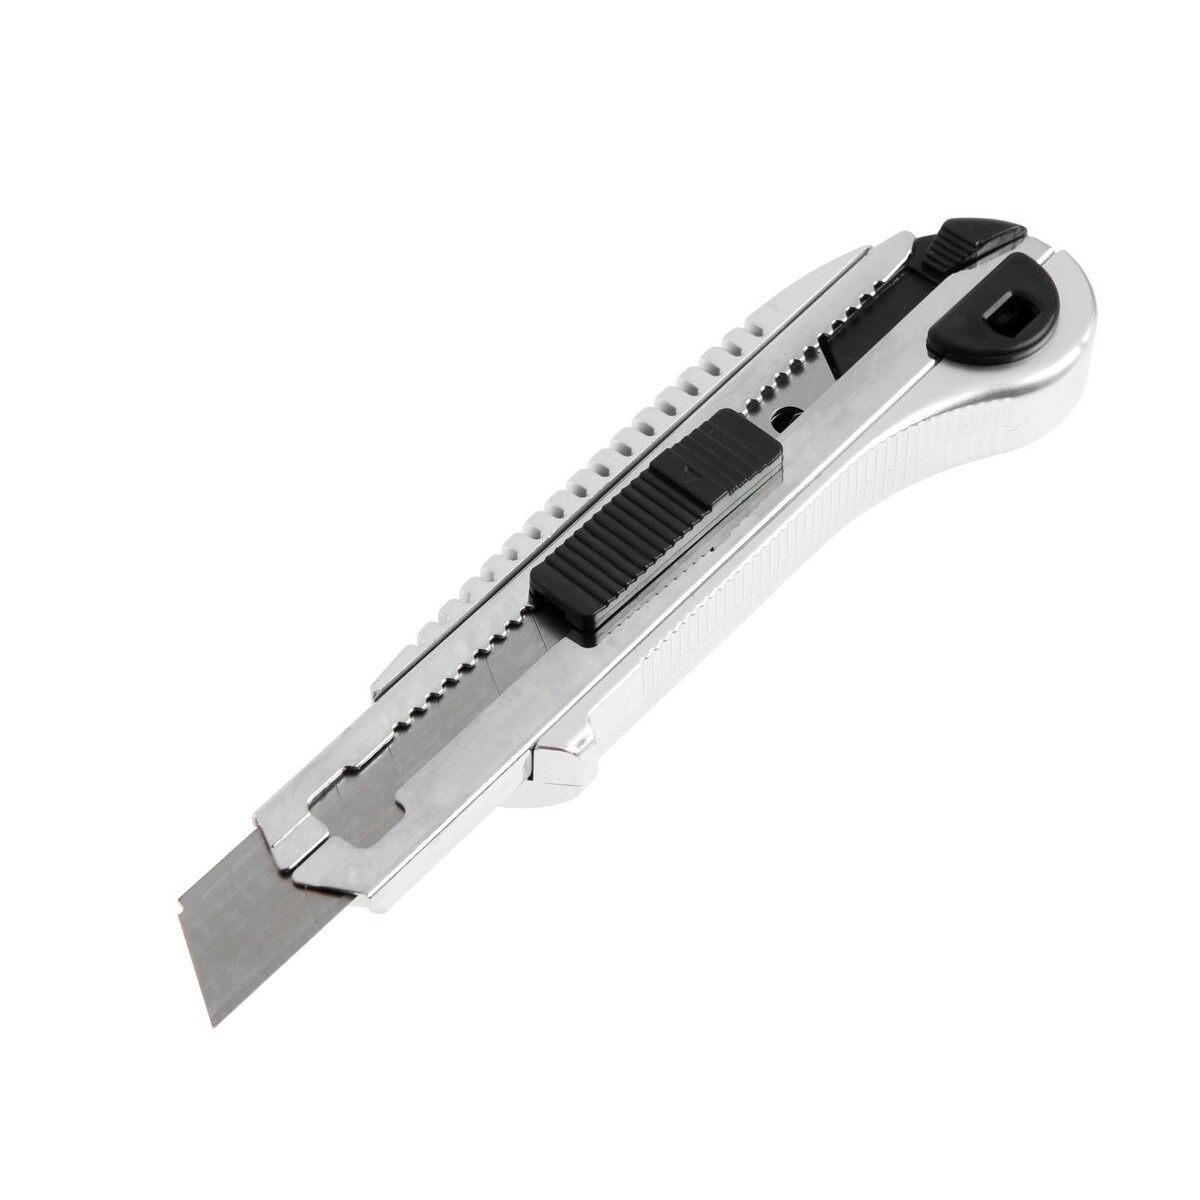 Нож универсальный тундра, усиленный, металлический, квадратный фиксатор, 18 мм нож универсальный тундра усиленный металлический квадратный фиксатор 18 мм